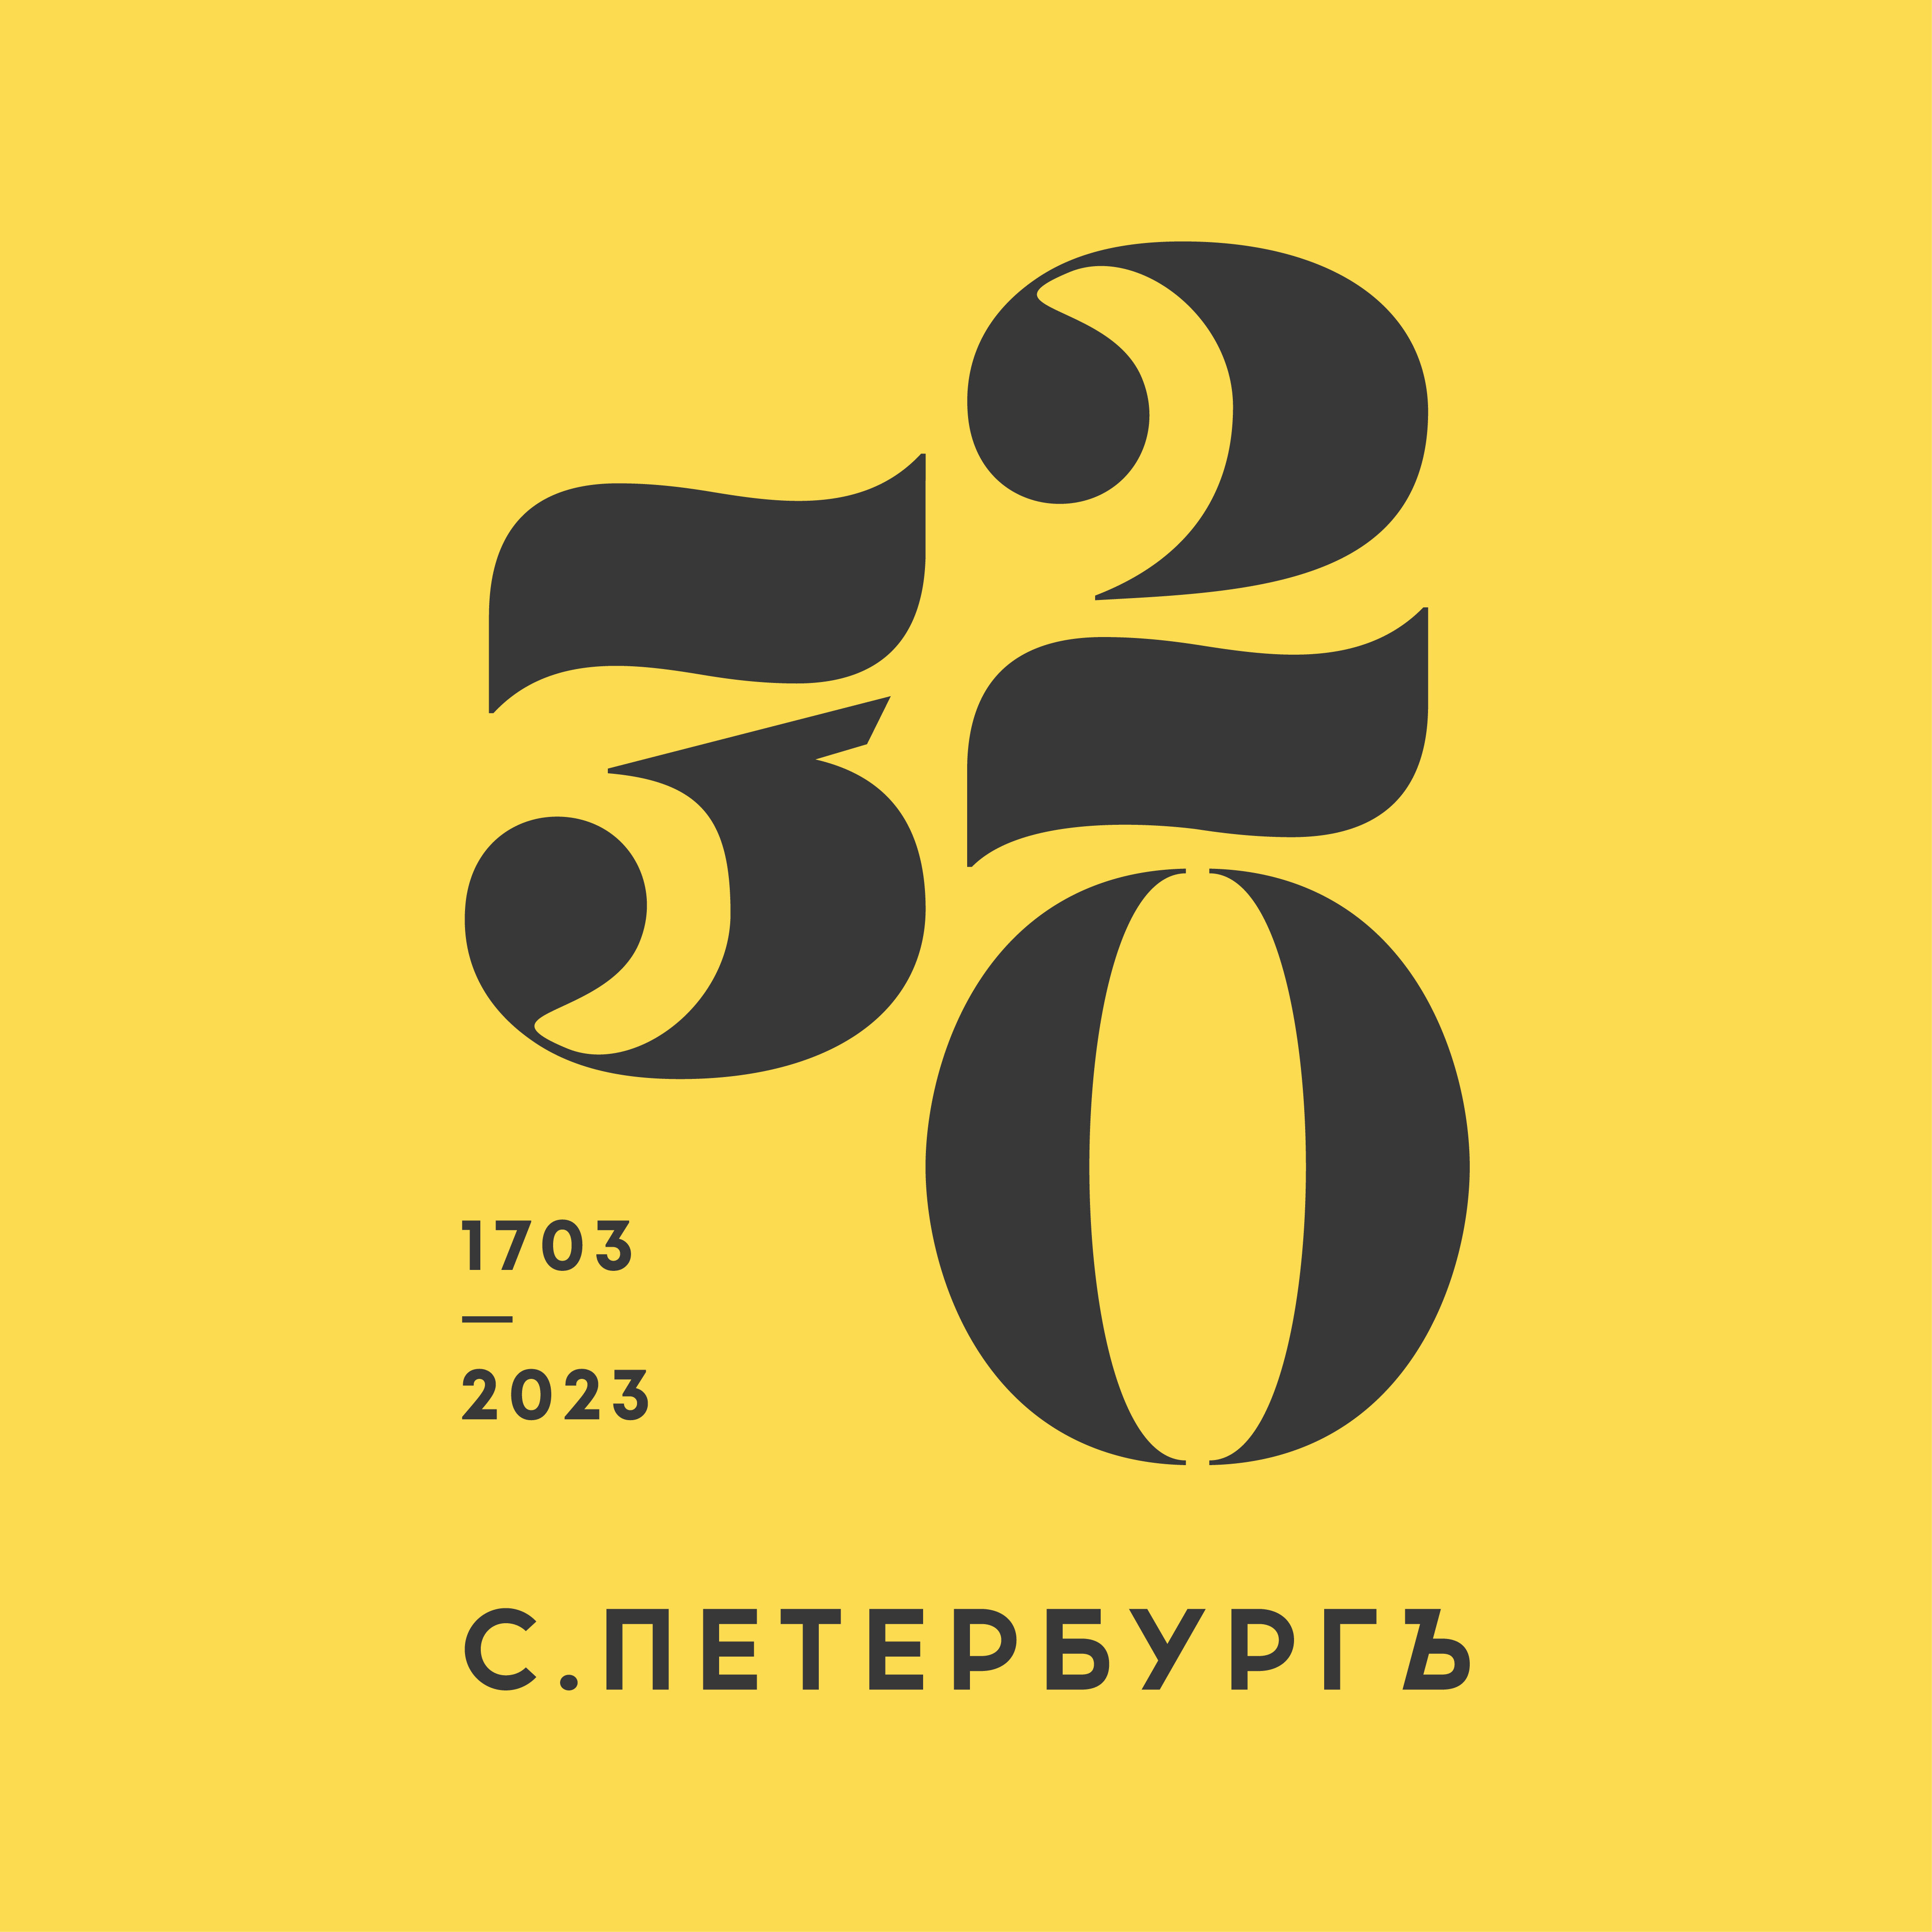 320 logo typographic gold